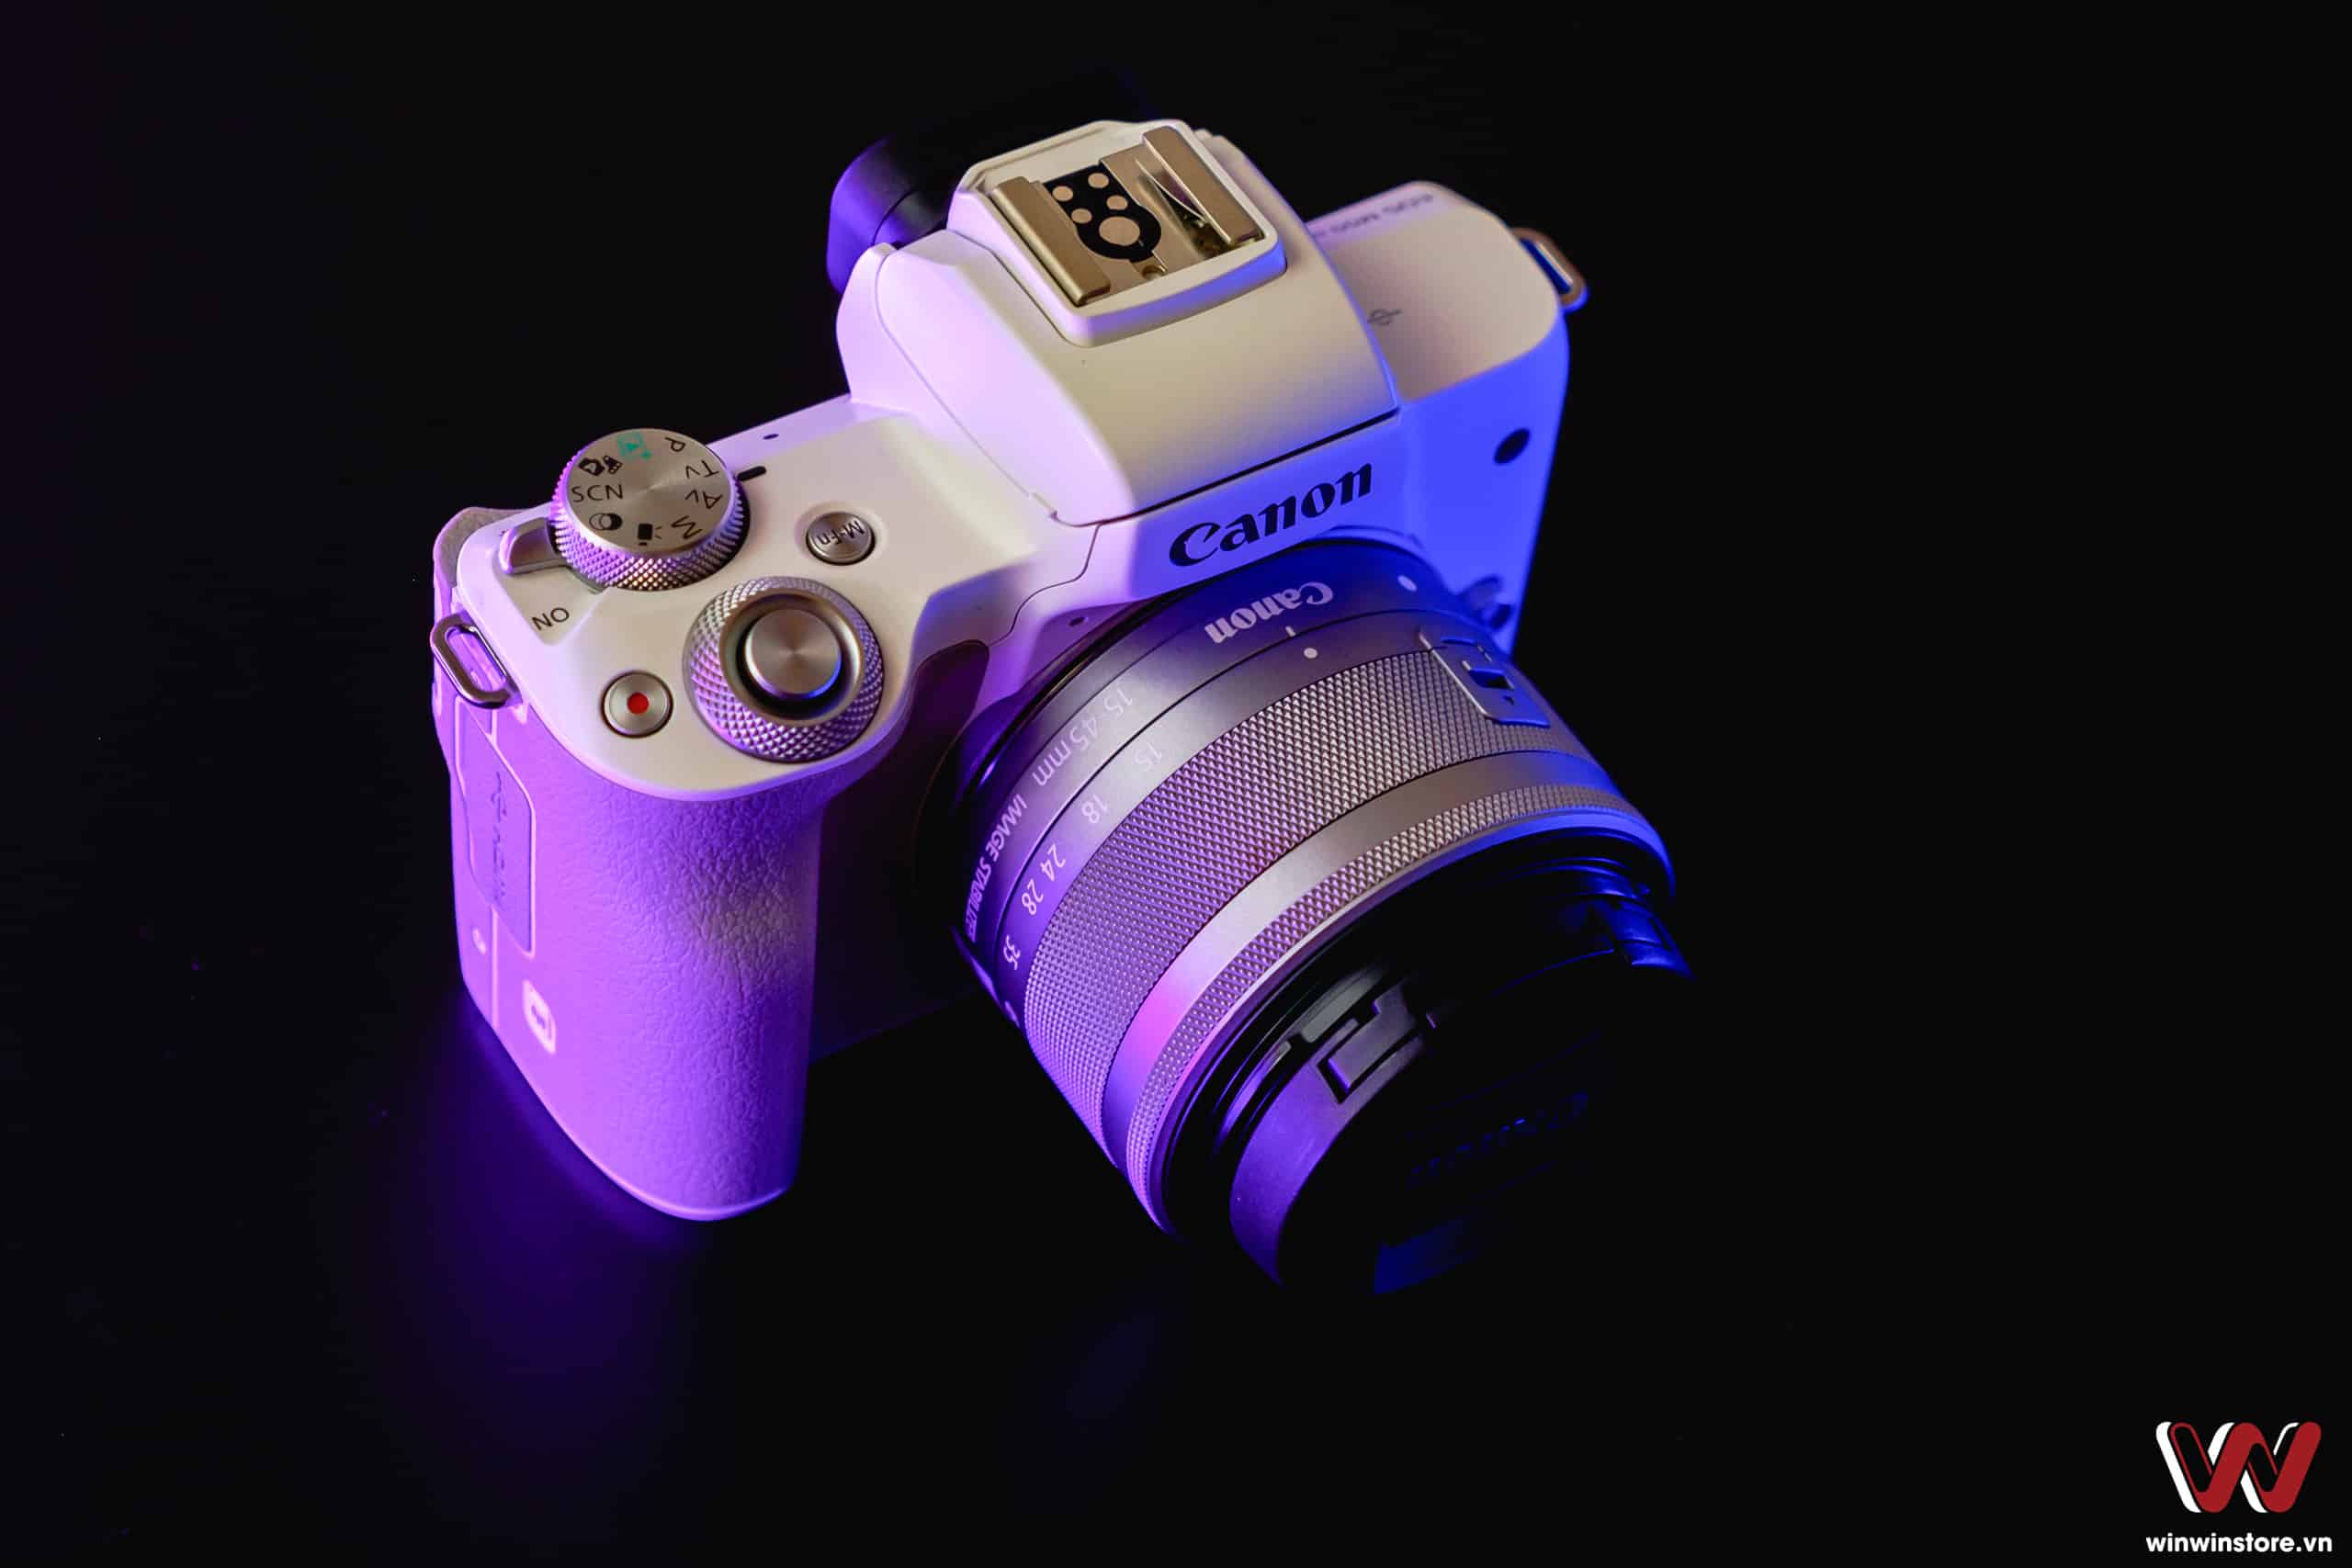 Máy ảnh Canon EOS M50 Mark II với ống kính 15-45mm (Black)